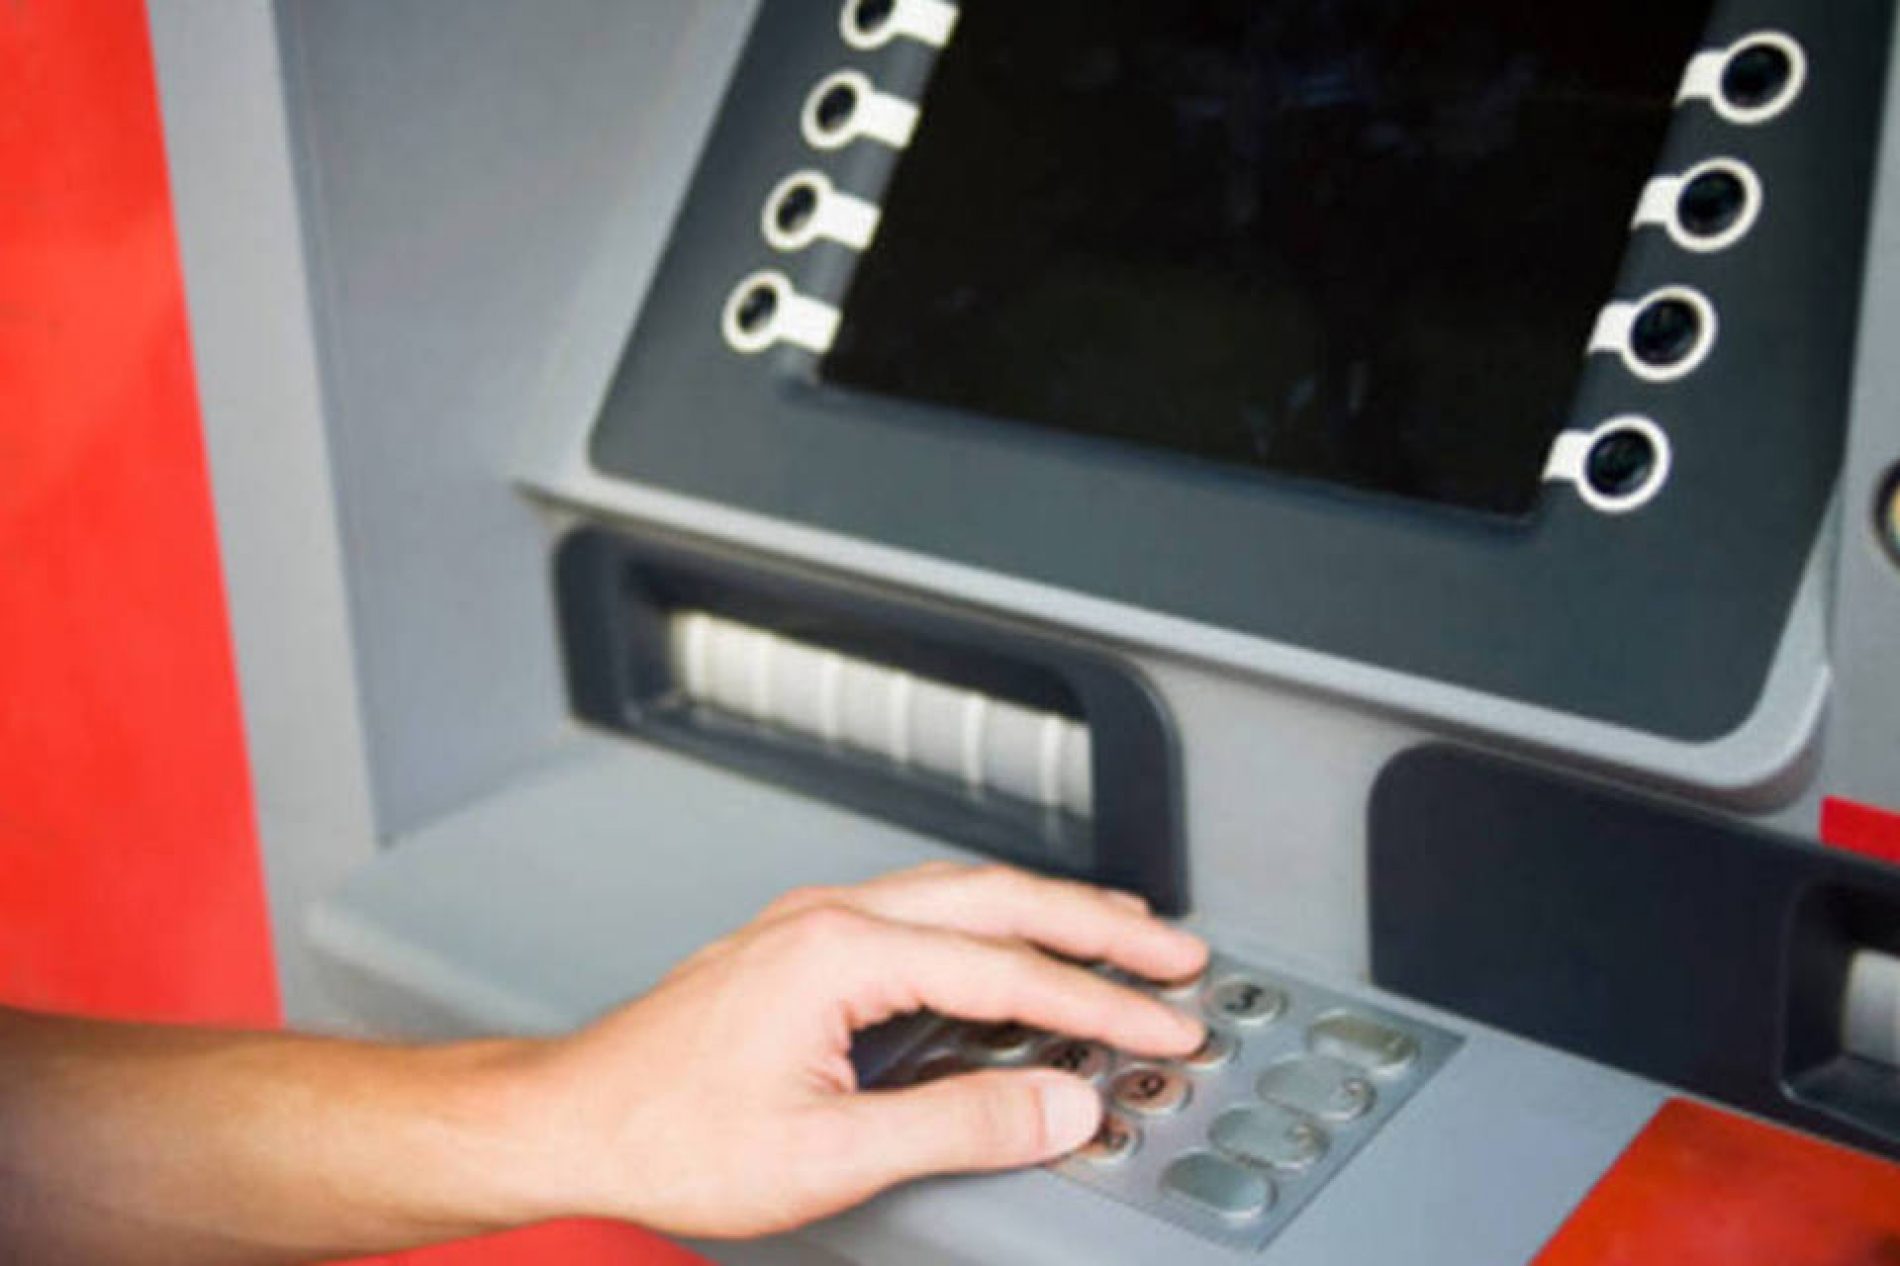 BARRETOS: Ladrões instalam computador em terminal eletrônico de agência bancária no centro da cidade